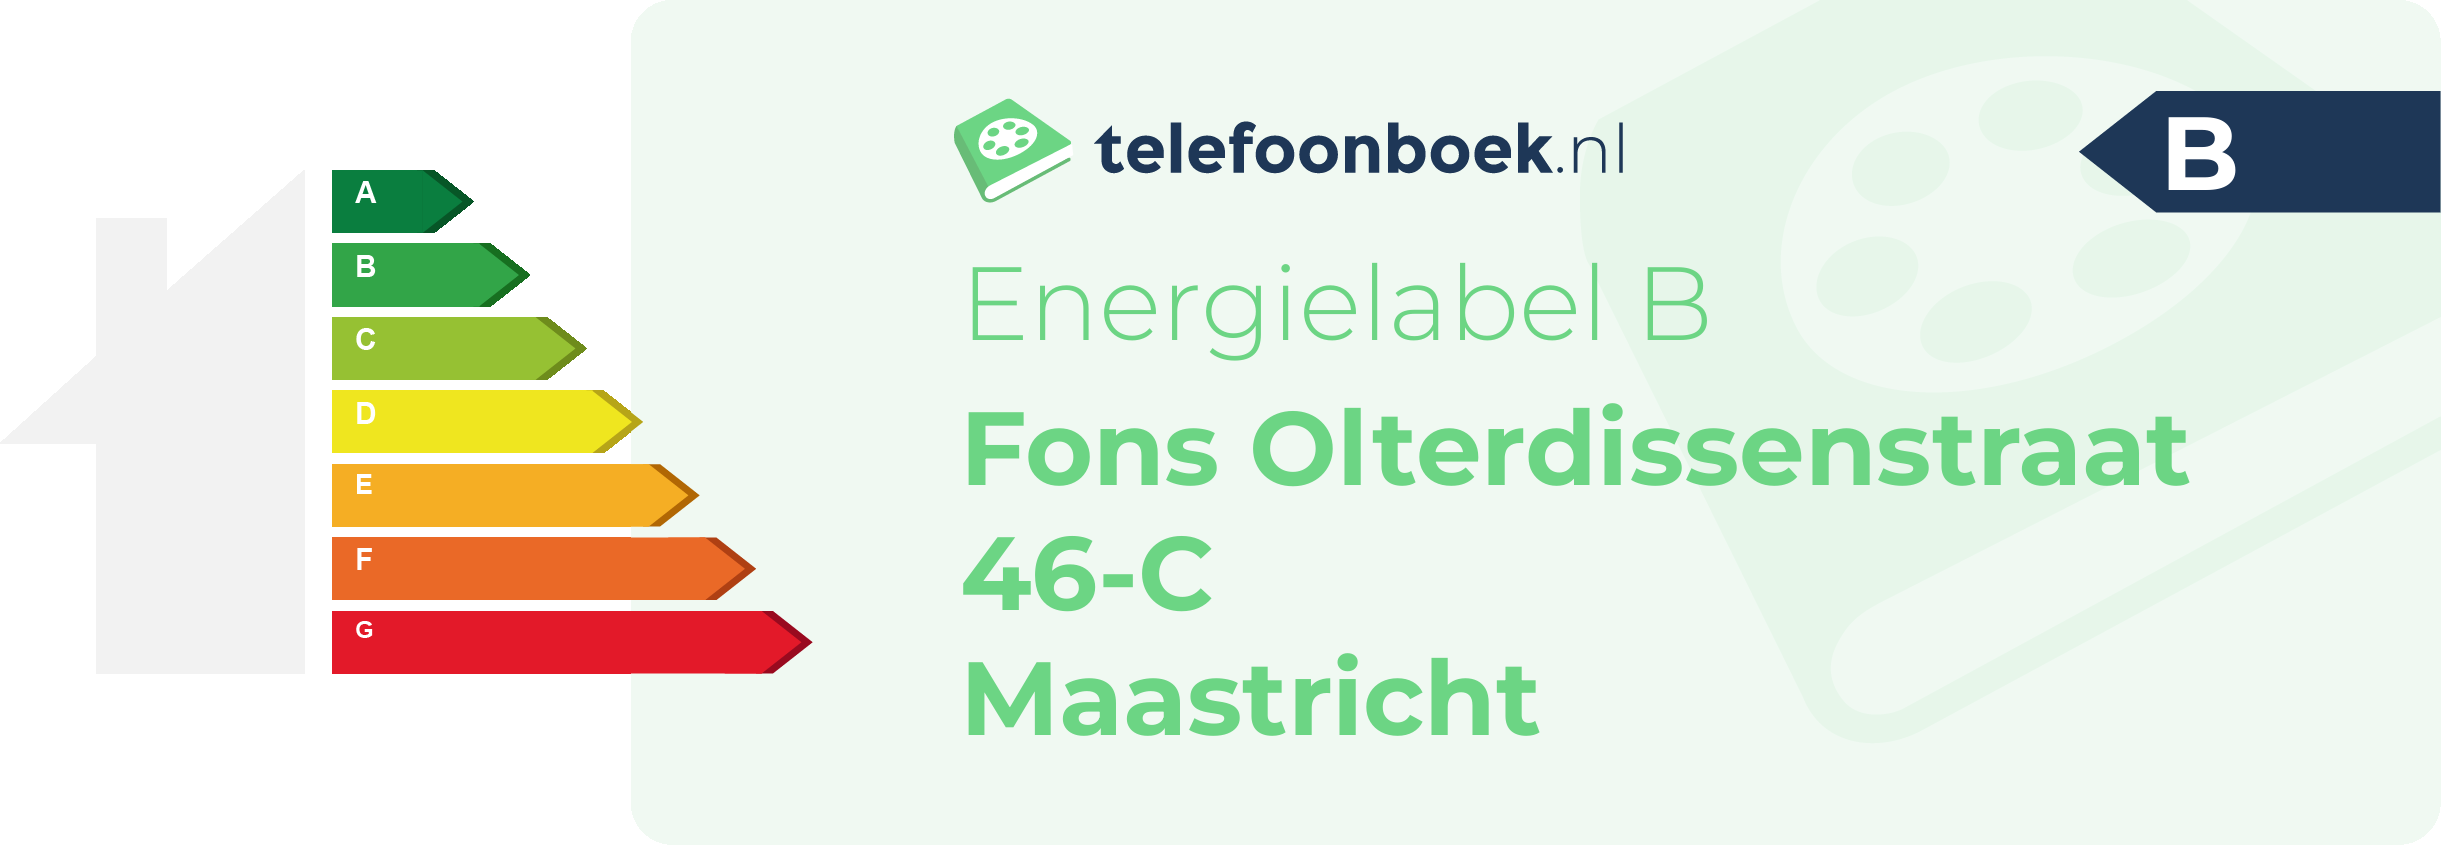 Energielabel Fons Olterdissenstraat 46-C Maastricht